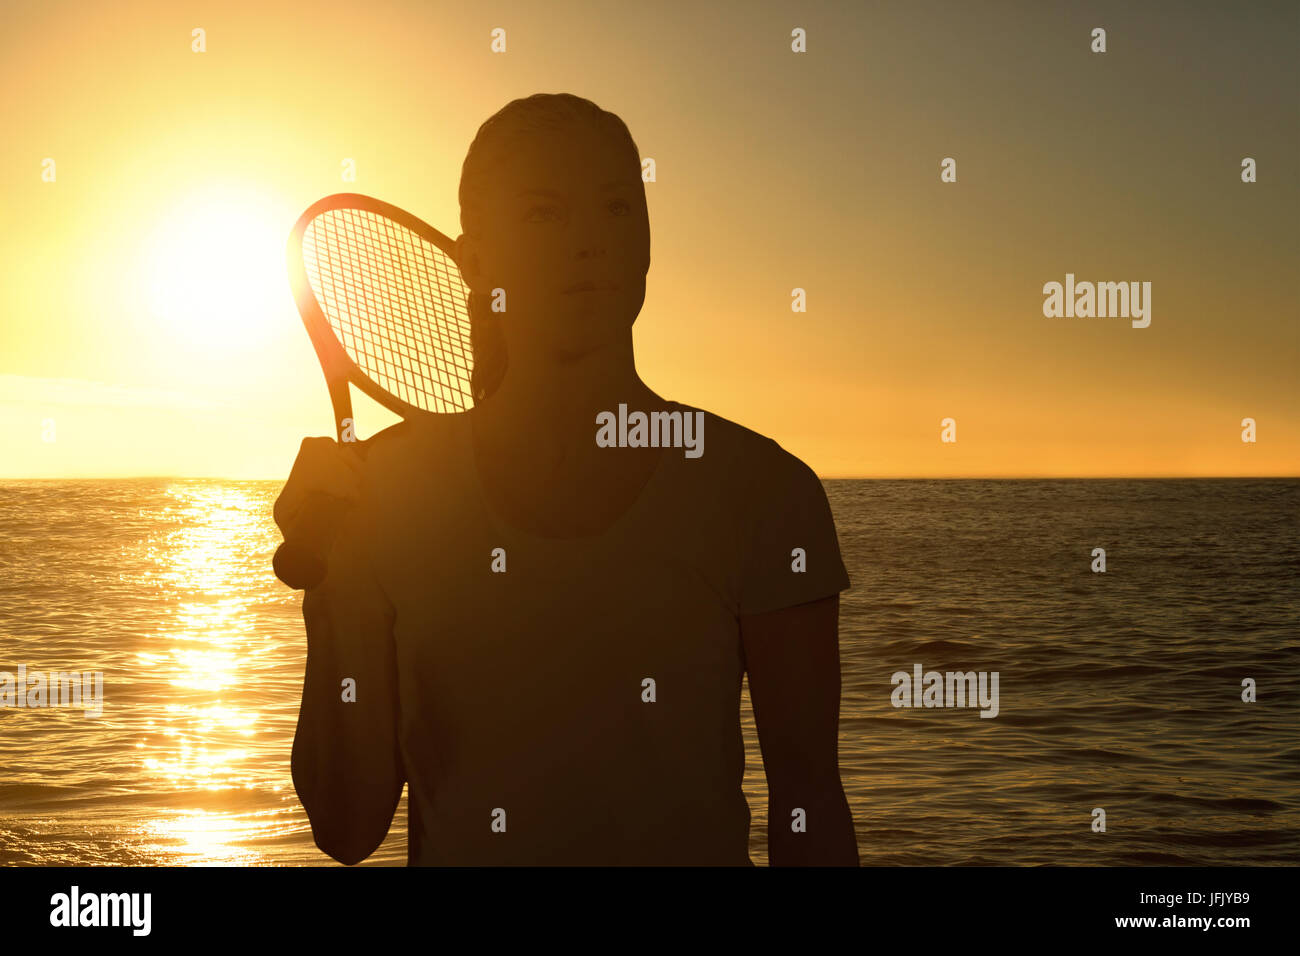 Immagine composita della femmina giocatore di tennis in posa con la racchetta Foto Stock